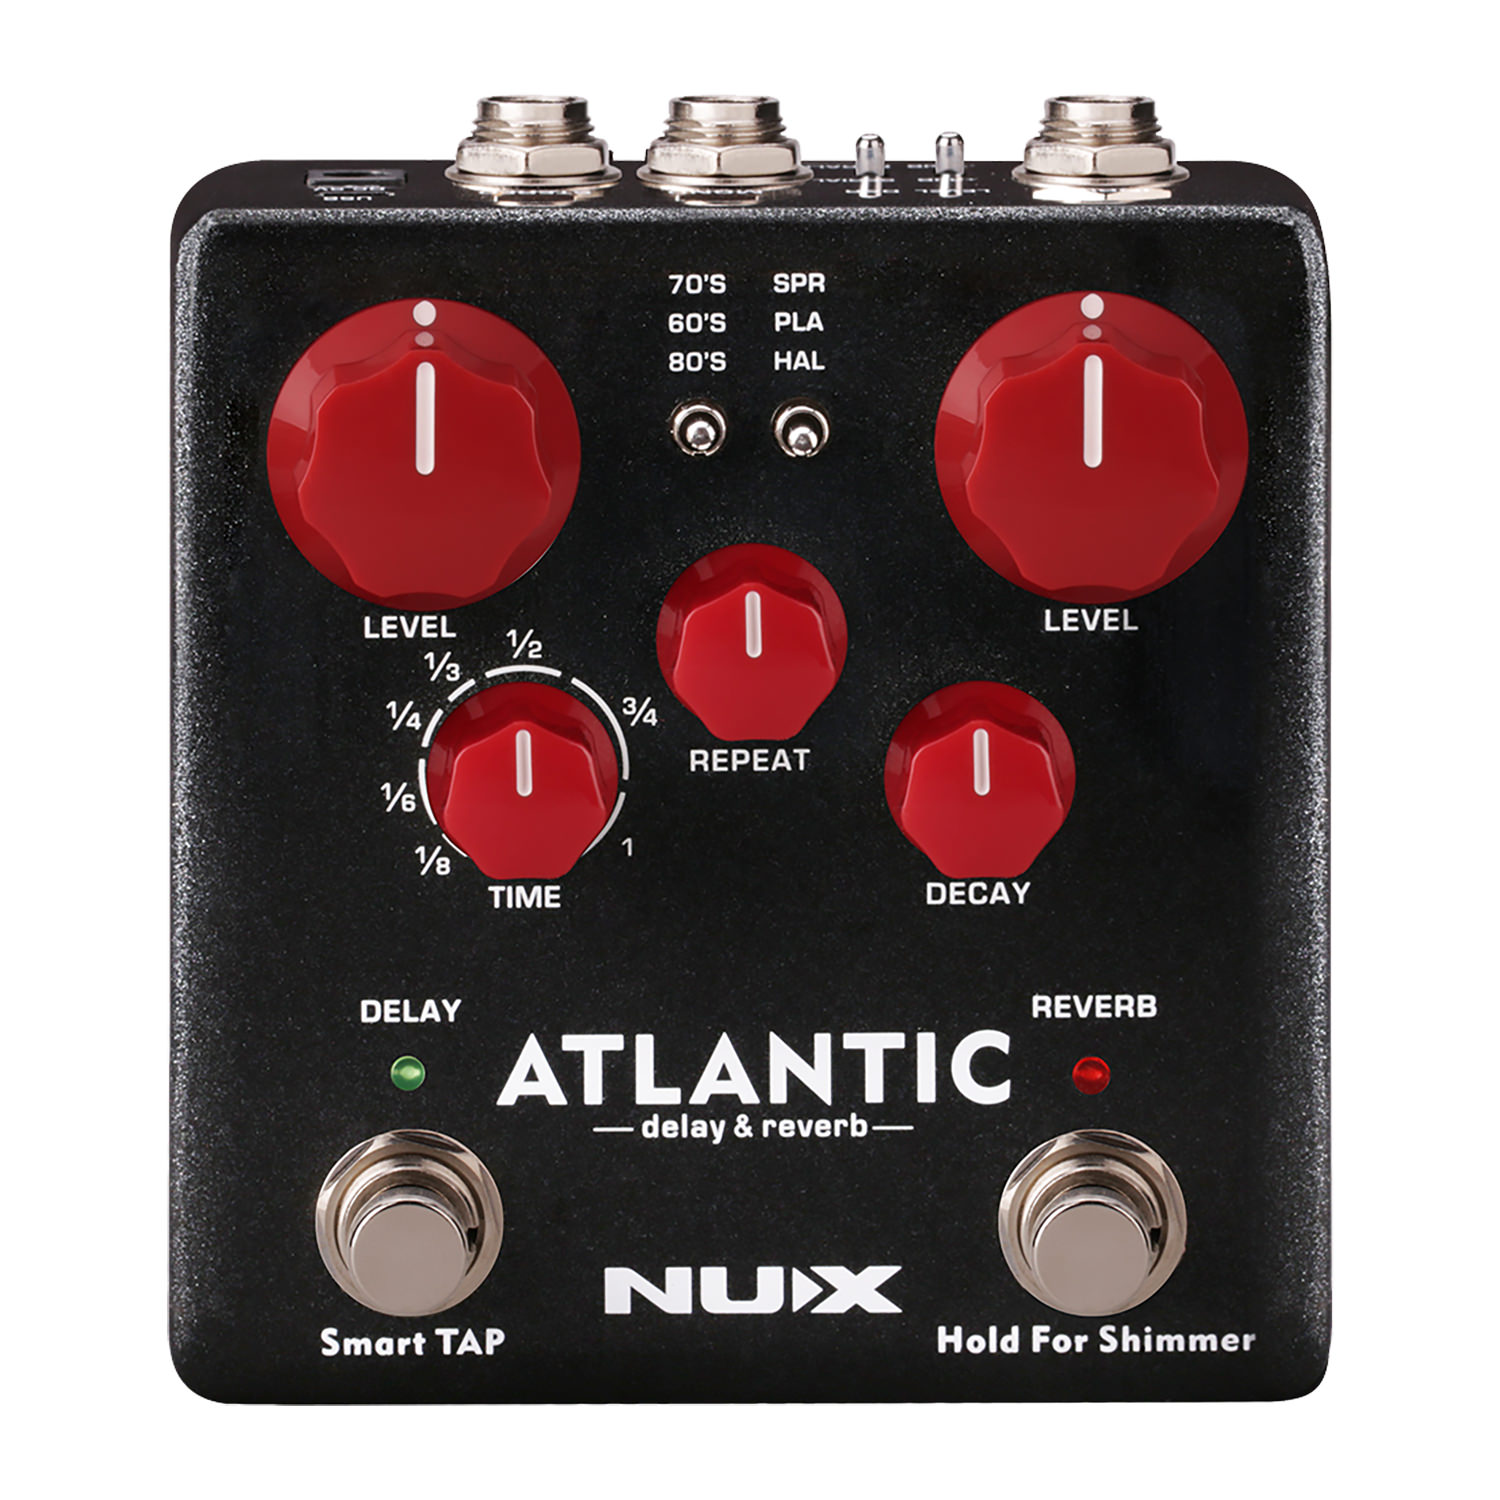 Процессоры эффектов и педали для гитары Nux NDR-5 Atlantic Delay & Reverb наручные часы atlantic 29355 45 27